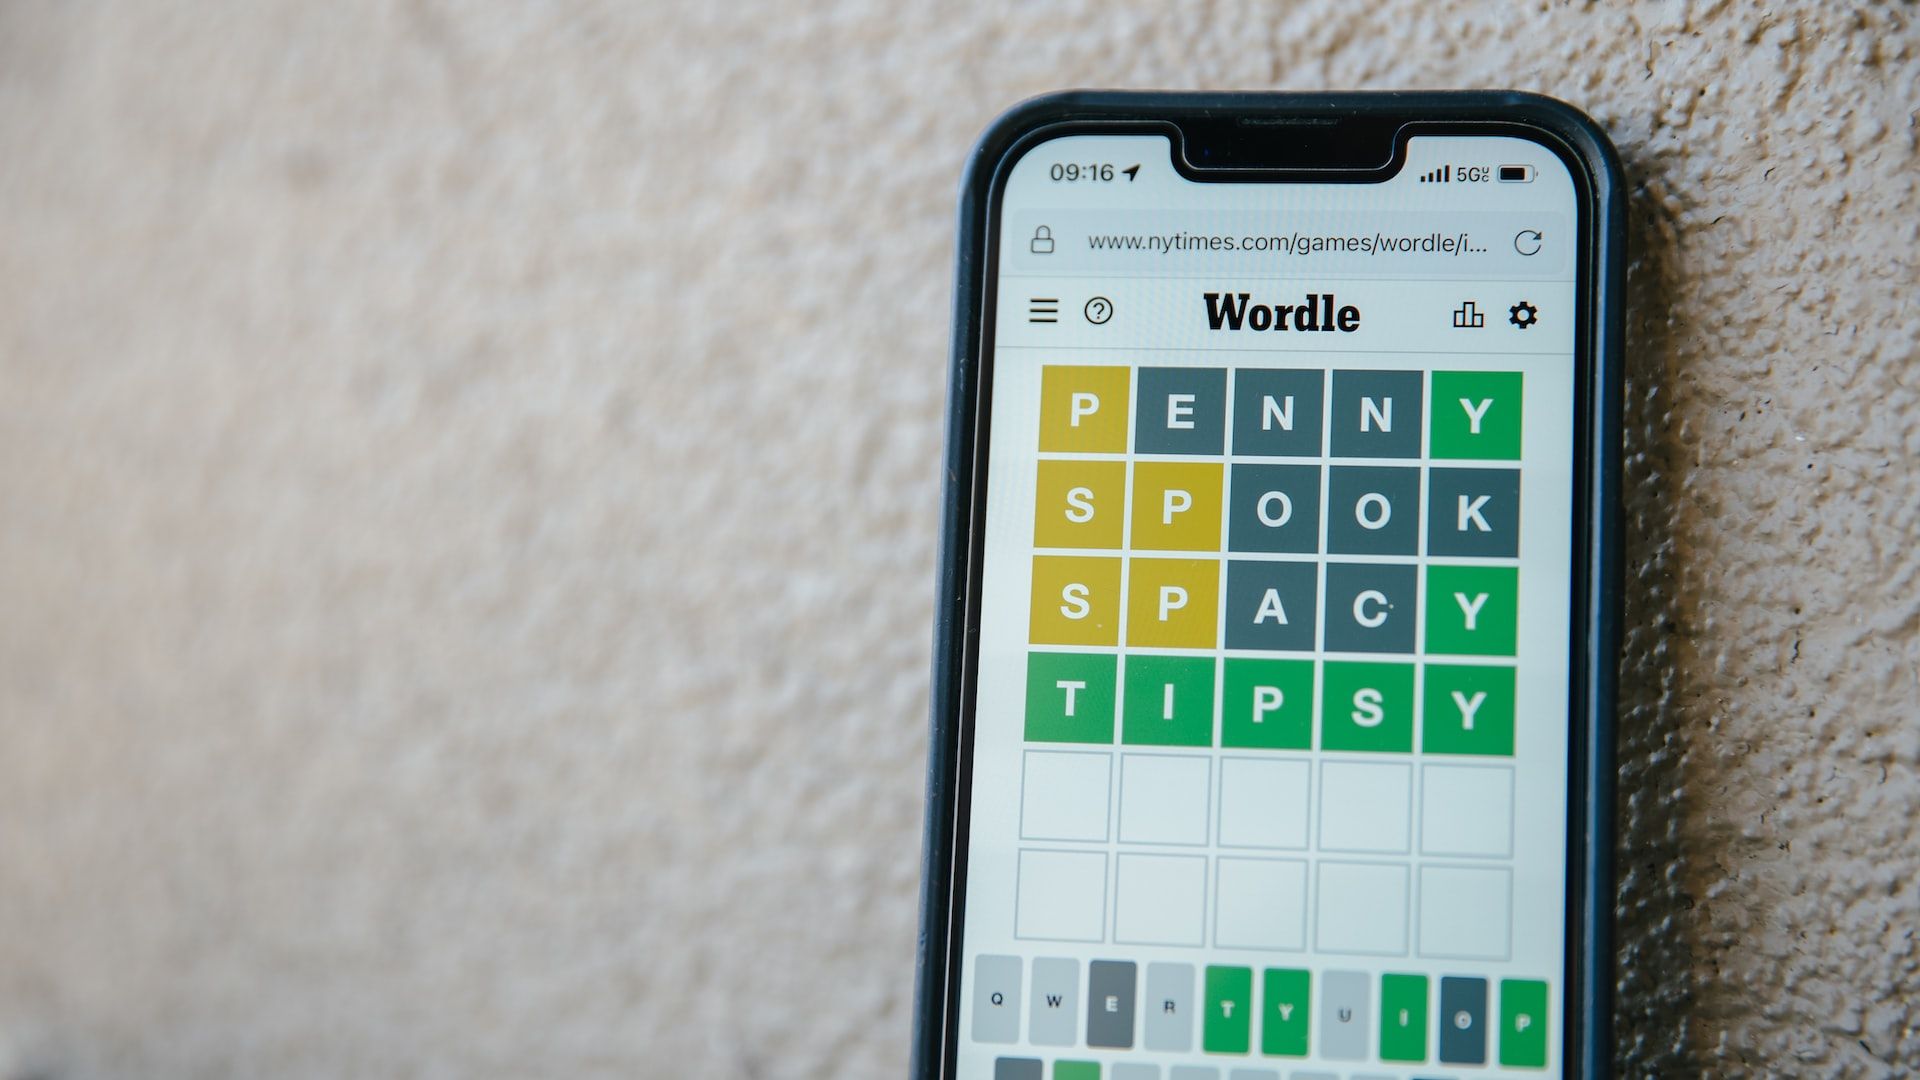 Petunjuk Puzzle Wordle di iPhone